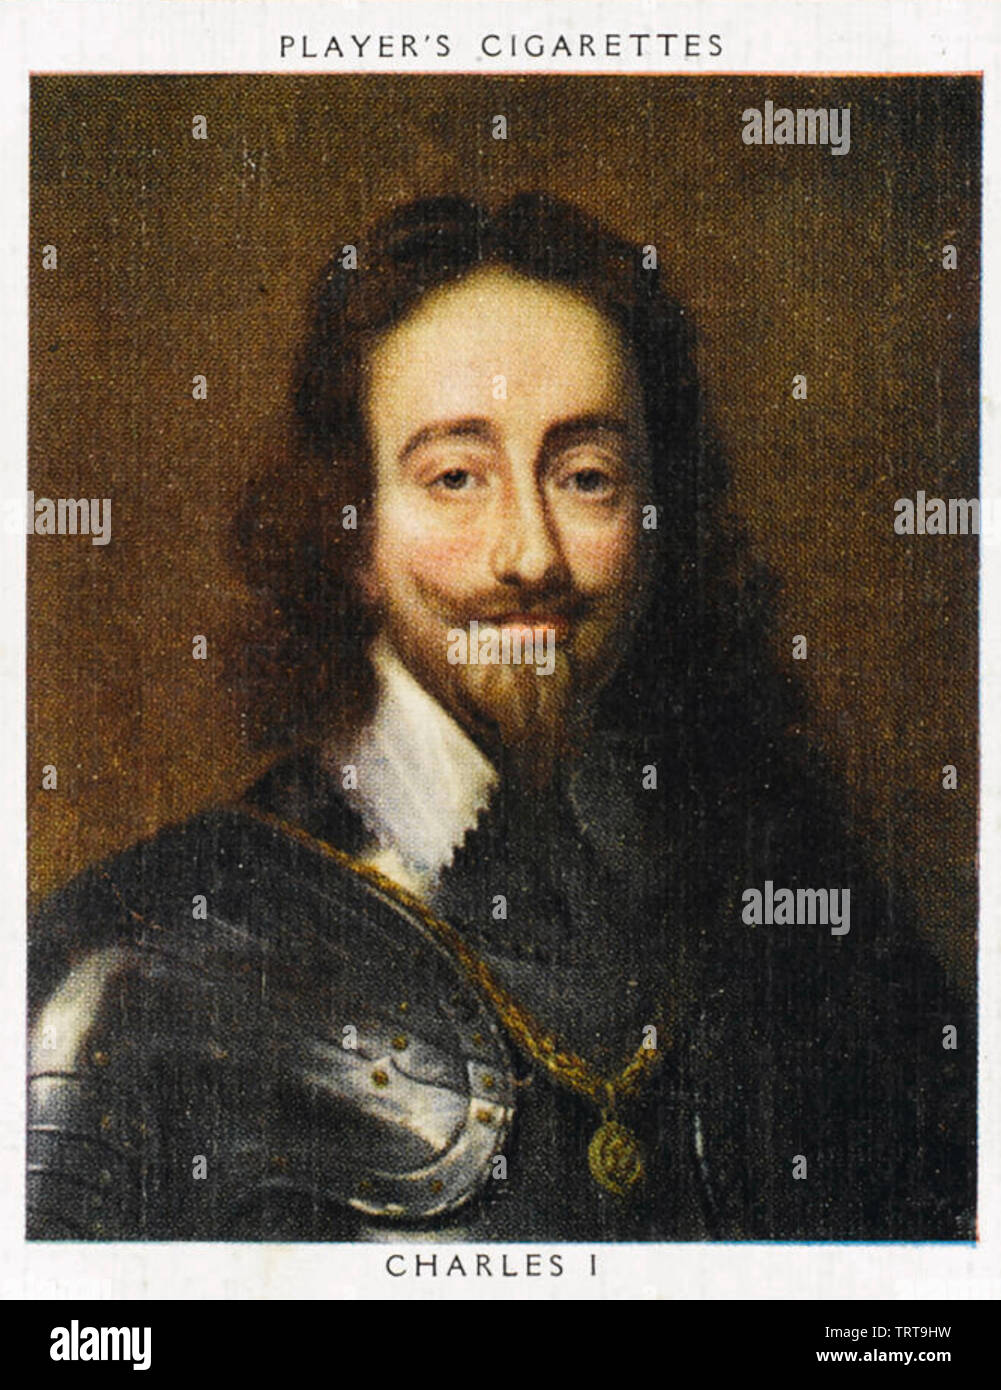 Carlos I de Inglaterra (1600-1649) en una tarjeta de cigarrillos 1930 Foto de stock